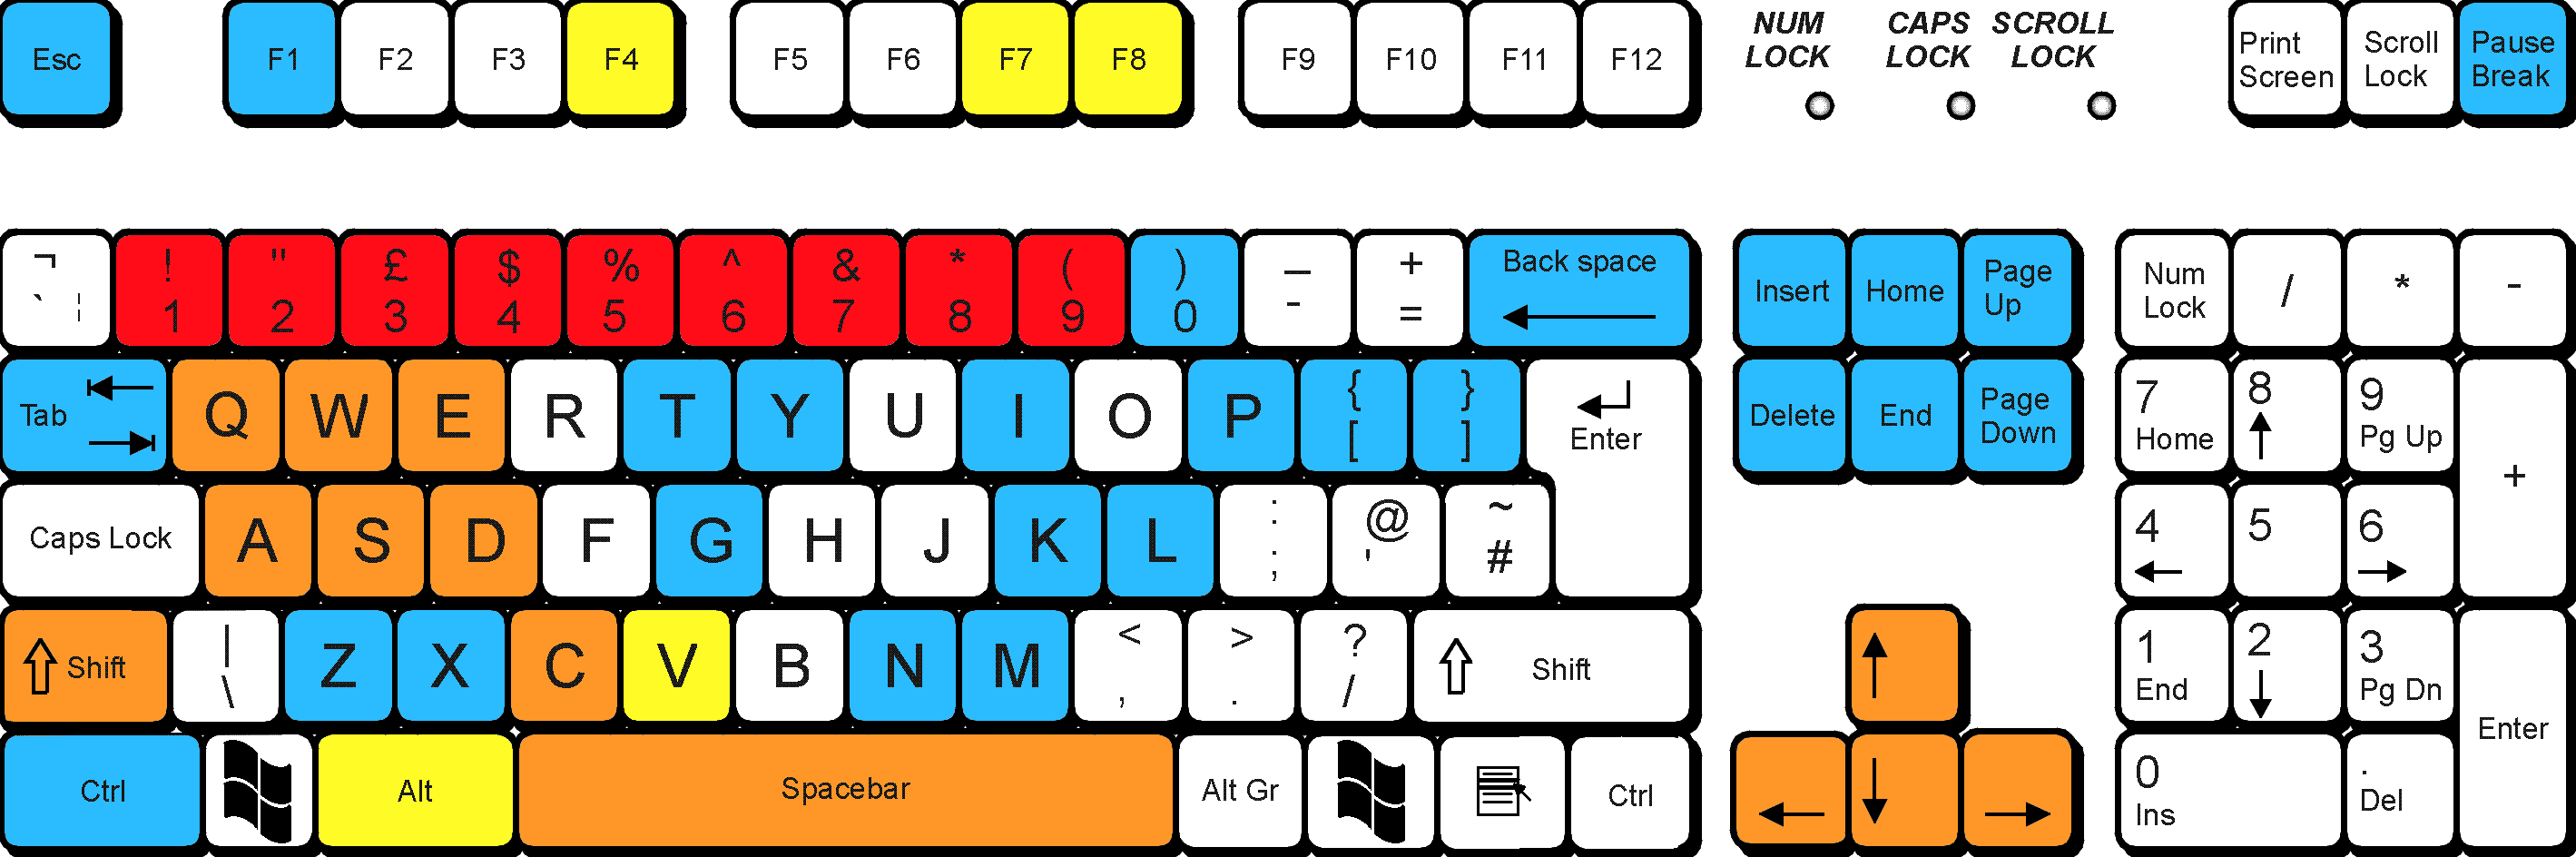 gylt keyboard controls